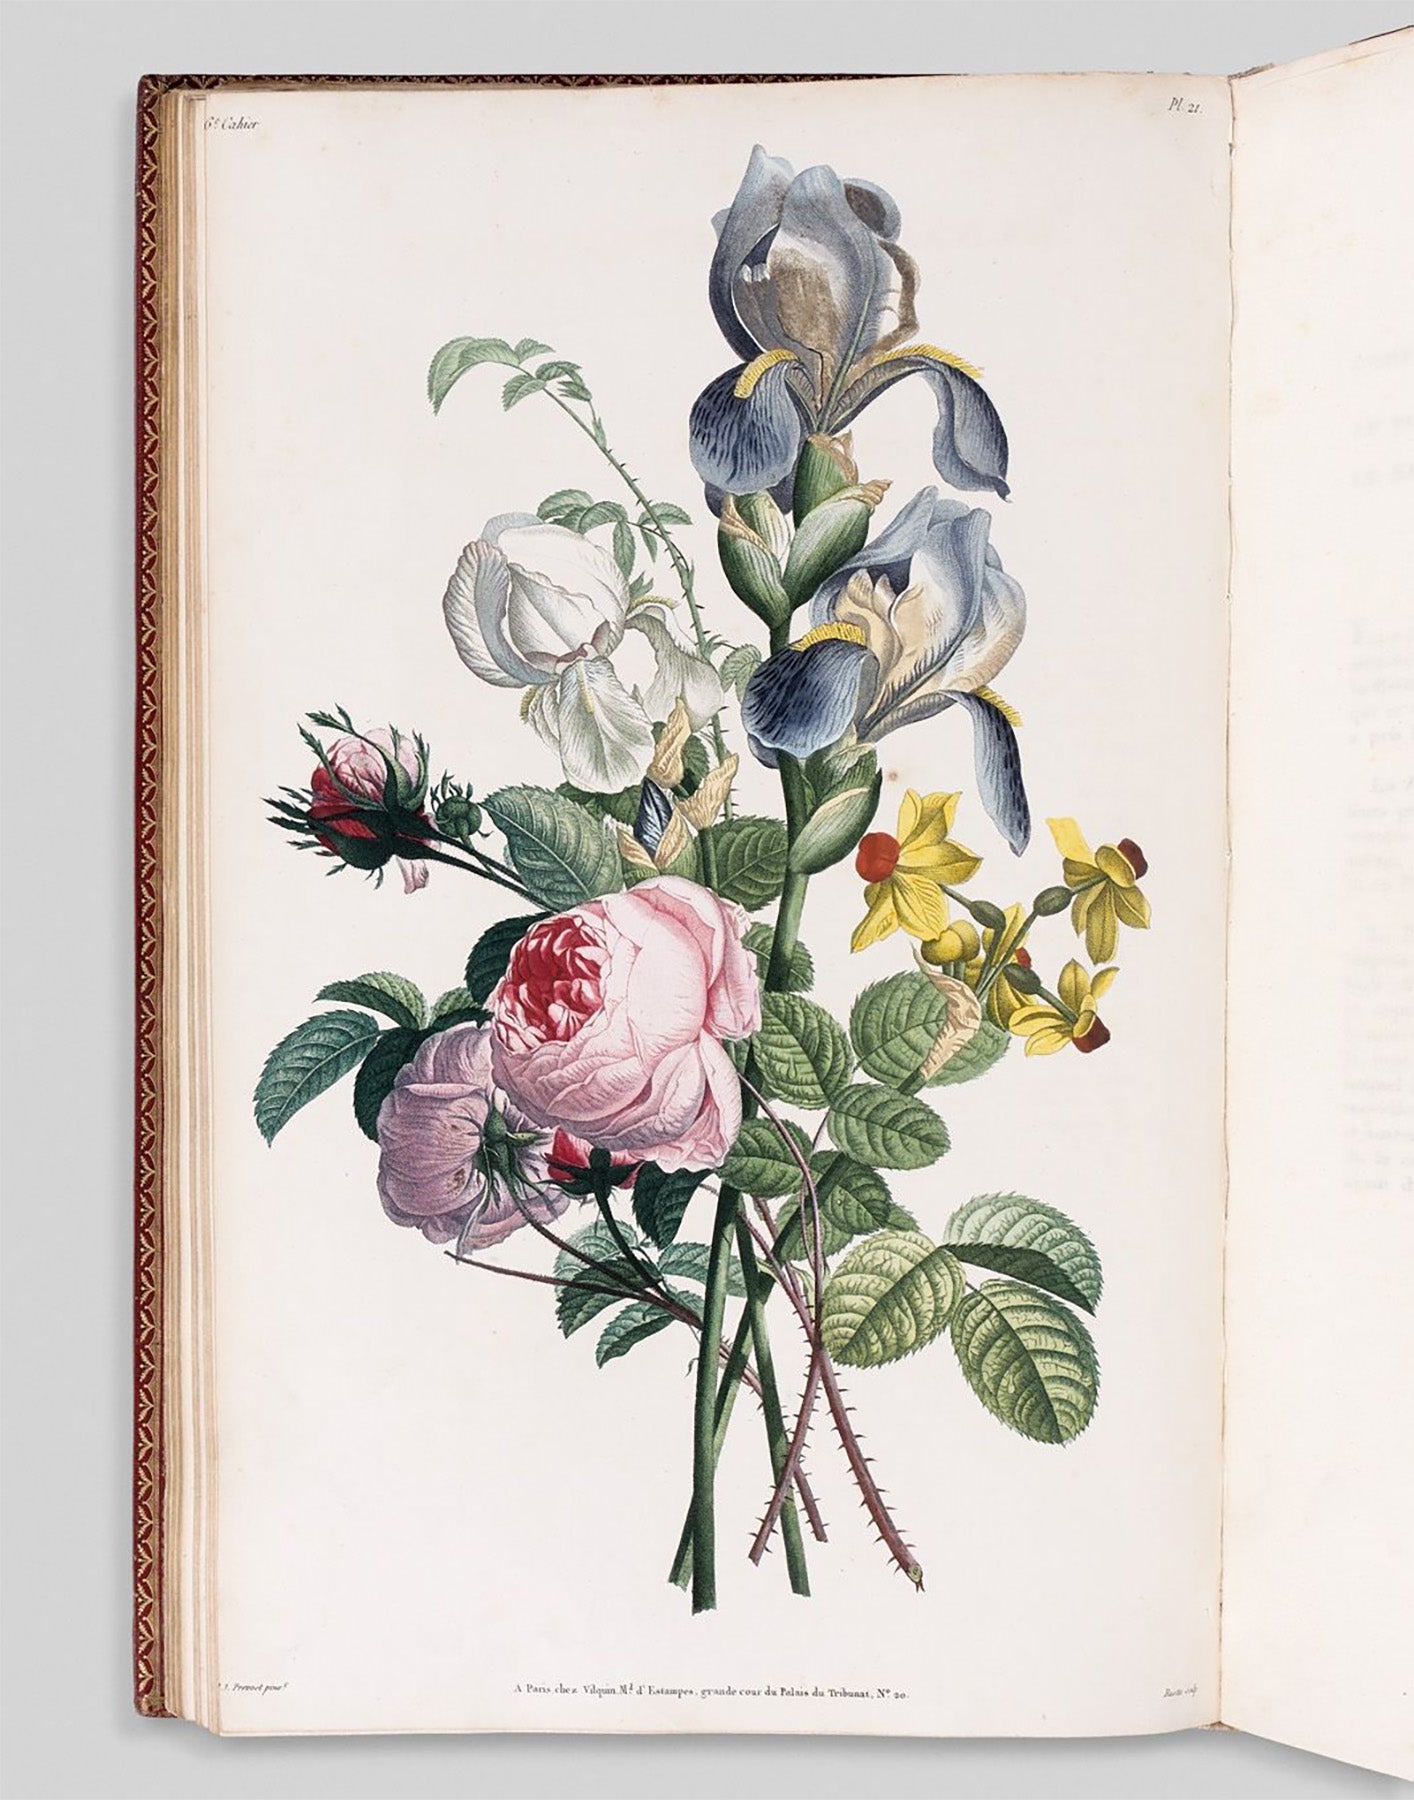 Dulcet Necklace - Plate 21 Collection des Fleurs et des Fruits with Emerald